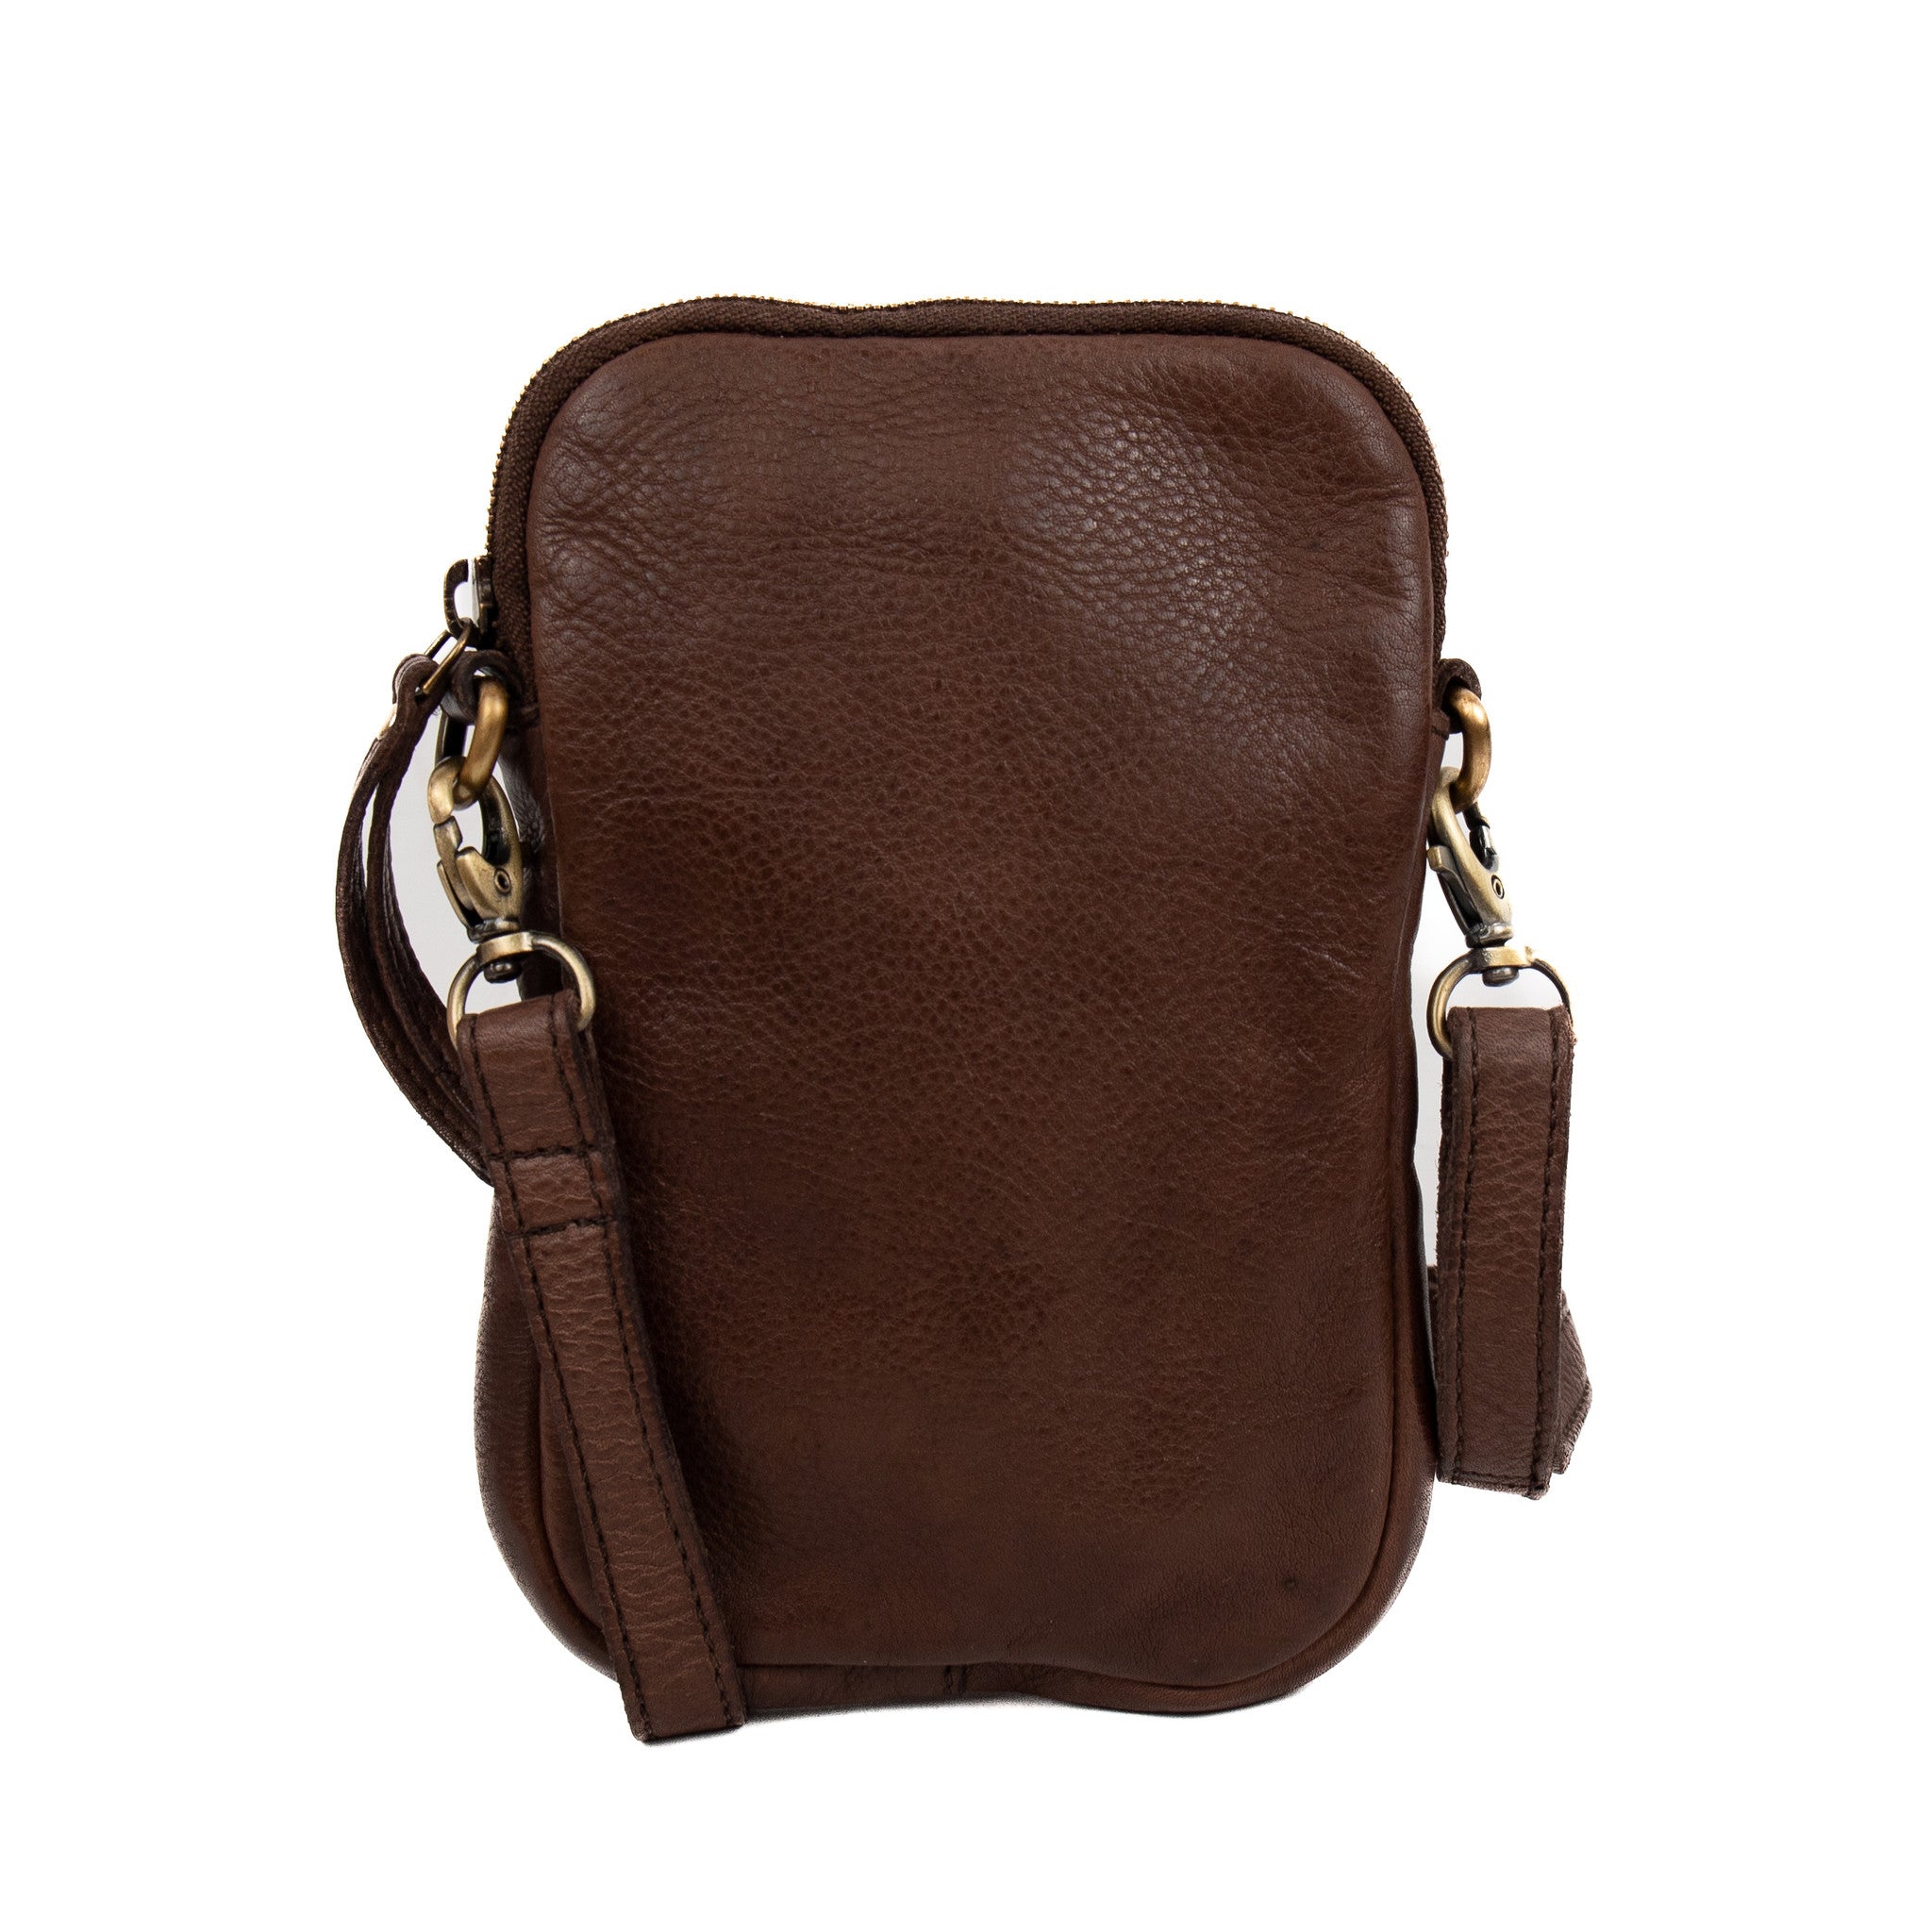 Phone bag 'Elina' dark brown - MJ 1751